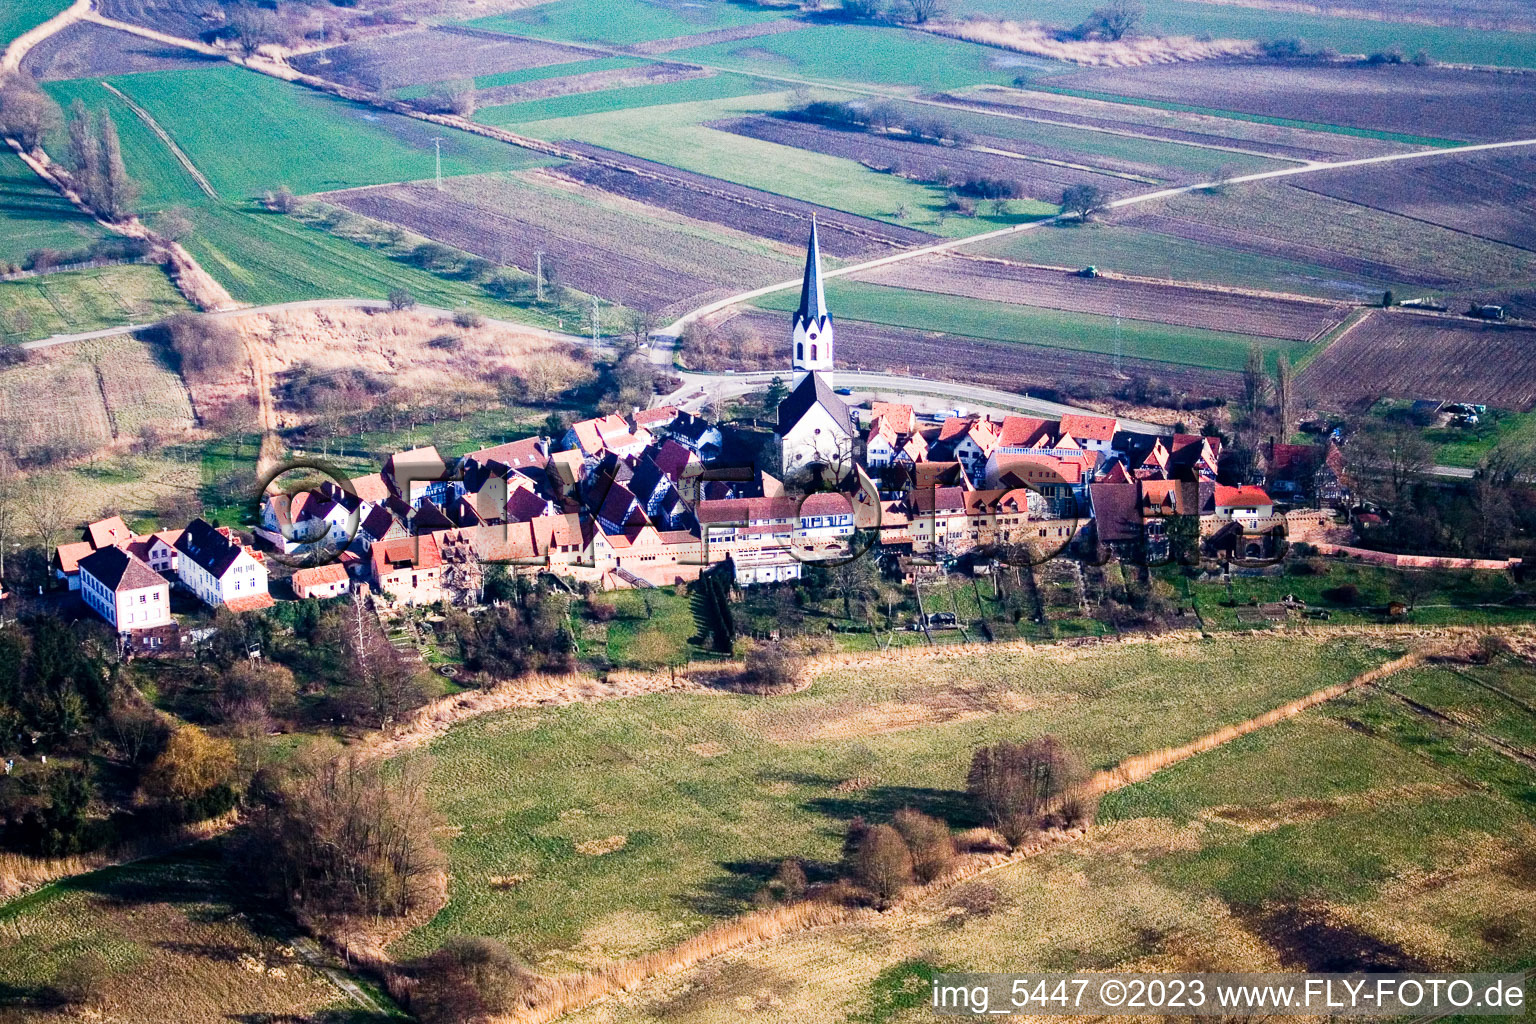 Vue aérienne de Centre du village historique de l'est à Jockgrim dans le département Rhénanie-Palatinat, Allemagne